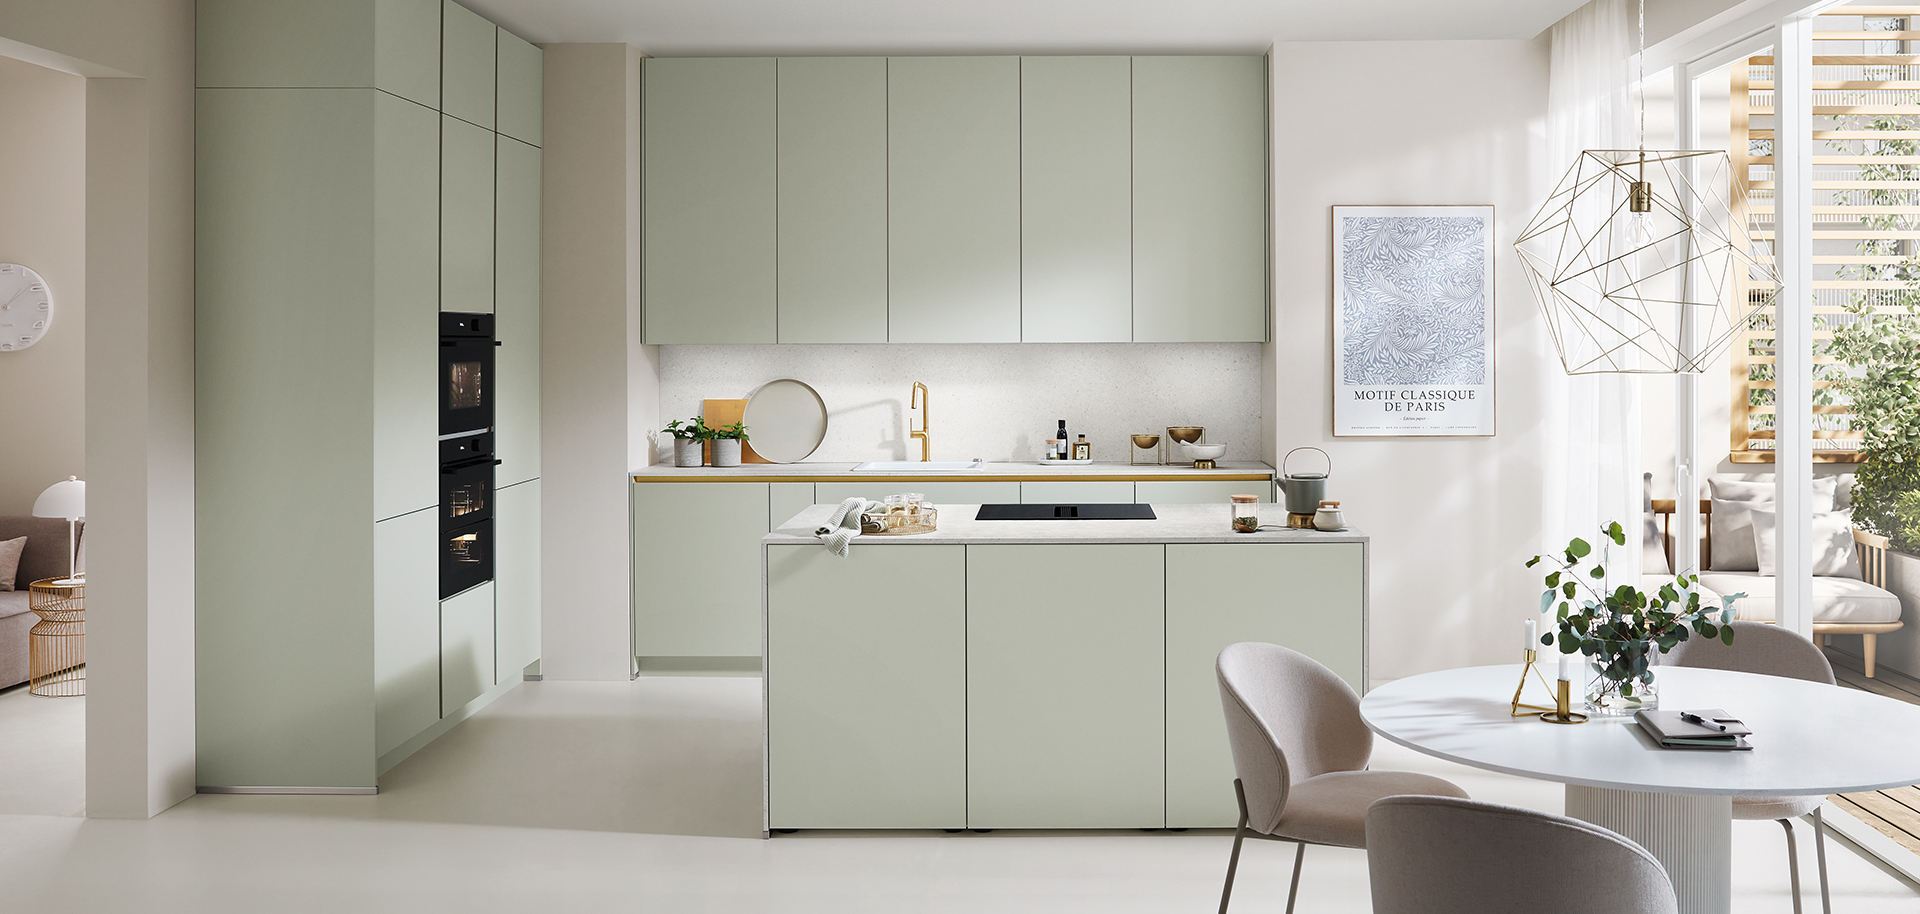 Moderní kuchyně s pastelově zelenými skříňkami, vestavěnými spotřebiči a útulným jídelním prostorem, který představuje minimalistický design a světlou, vzdušnou atmosféru.